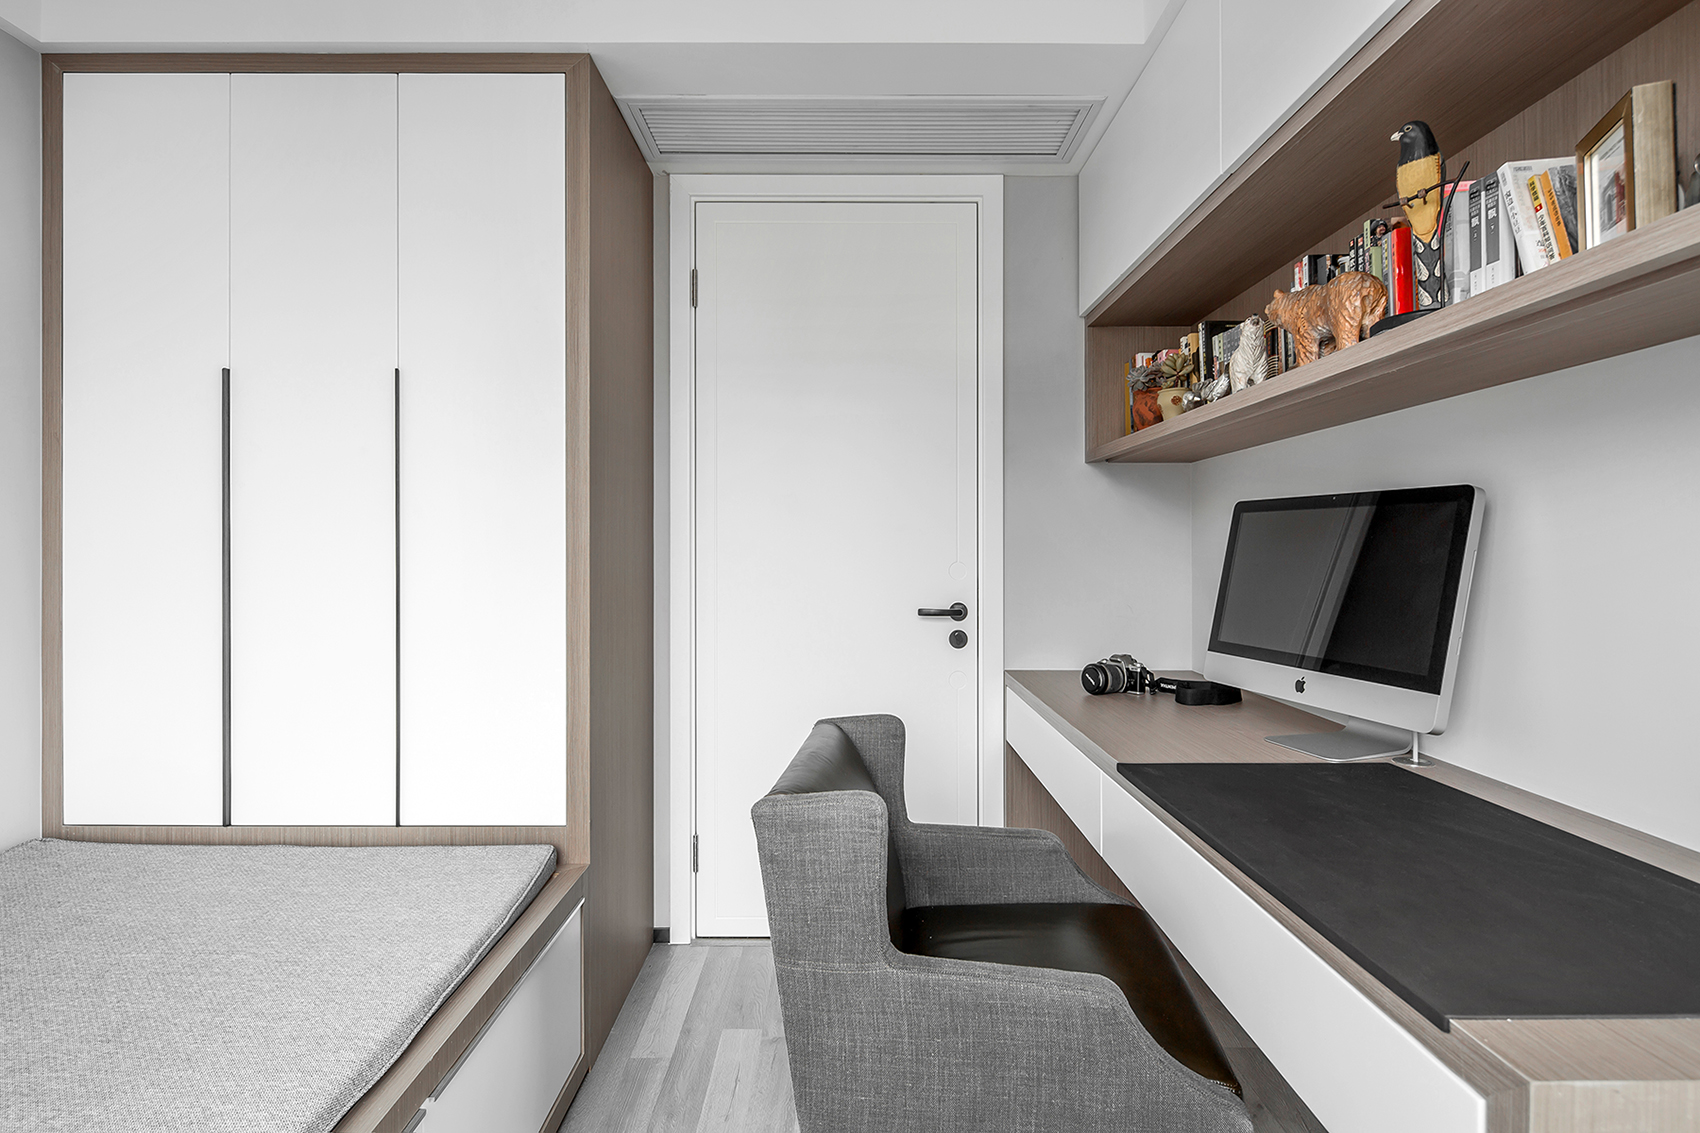 客房整体家具采用原木色与白色搭配，榻榻米衣柜定制化设计，提高了空间利用率。